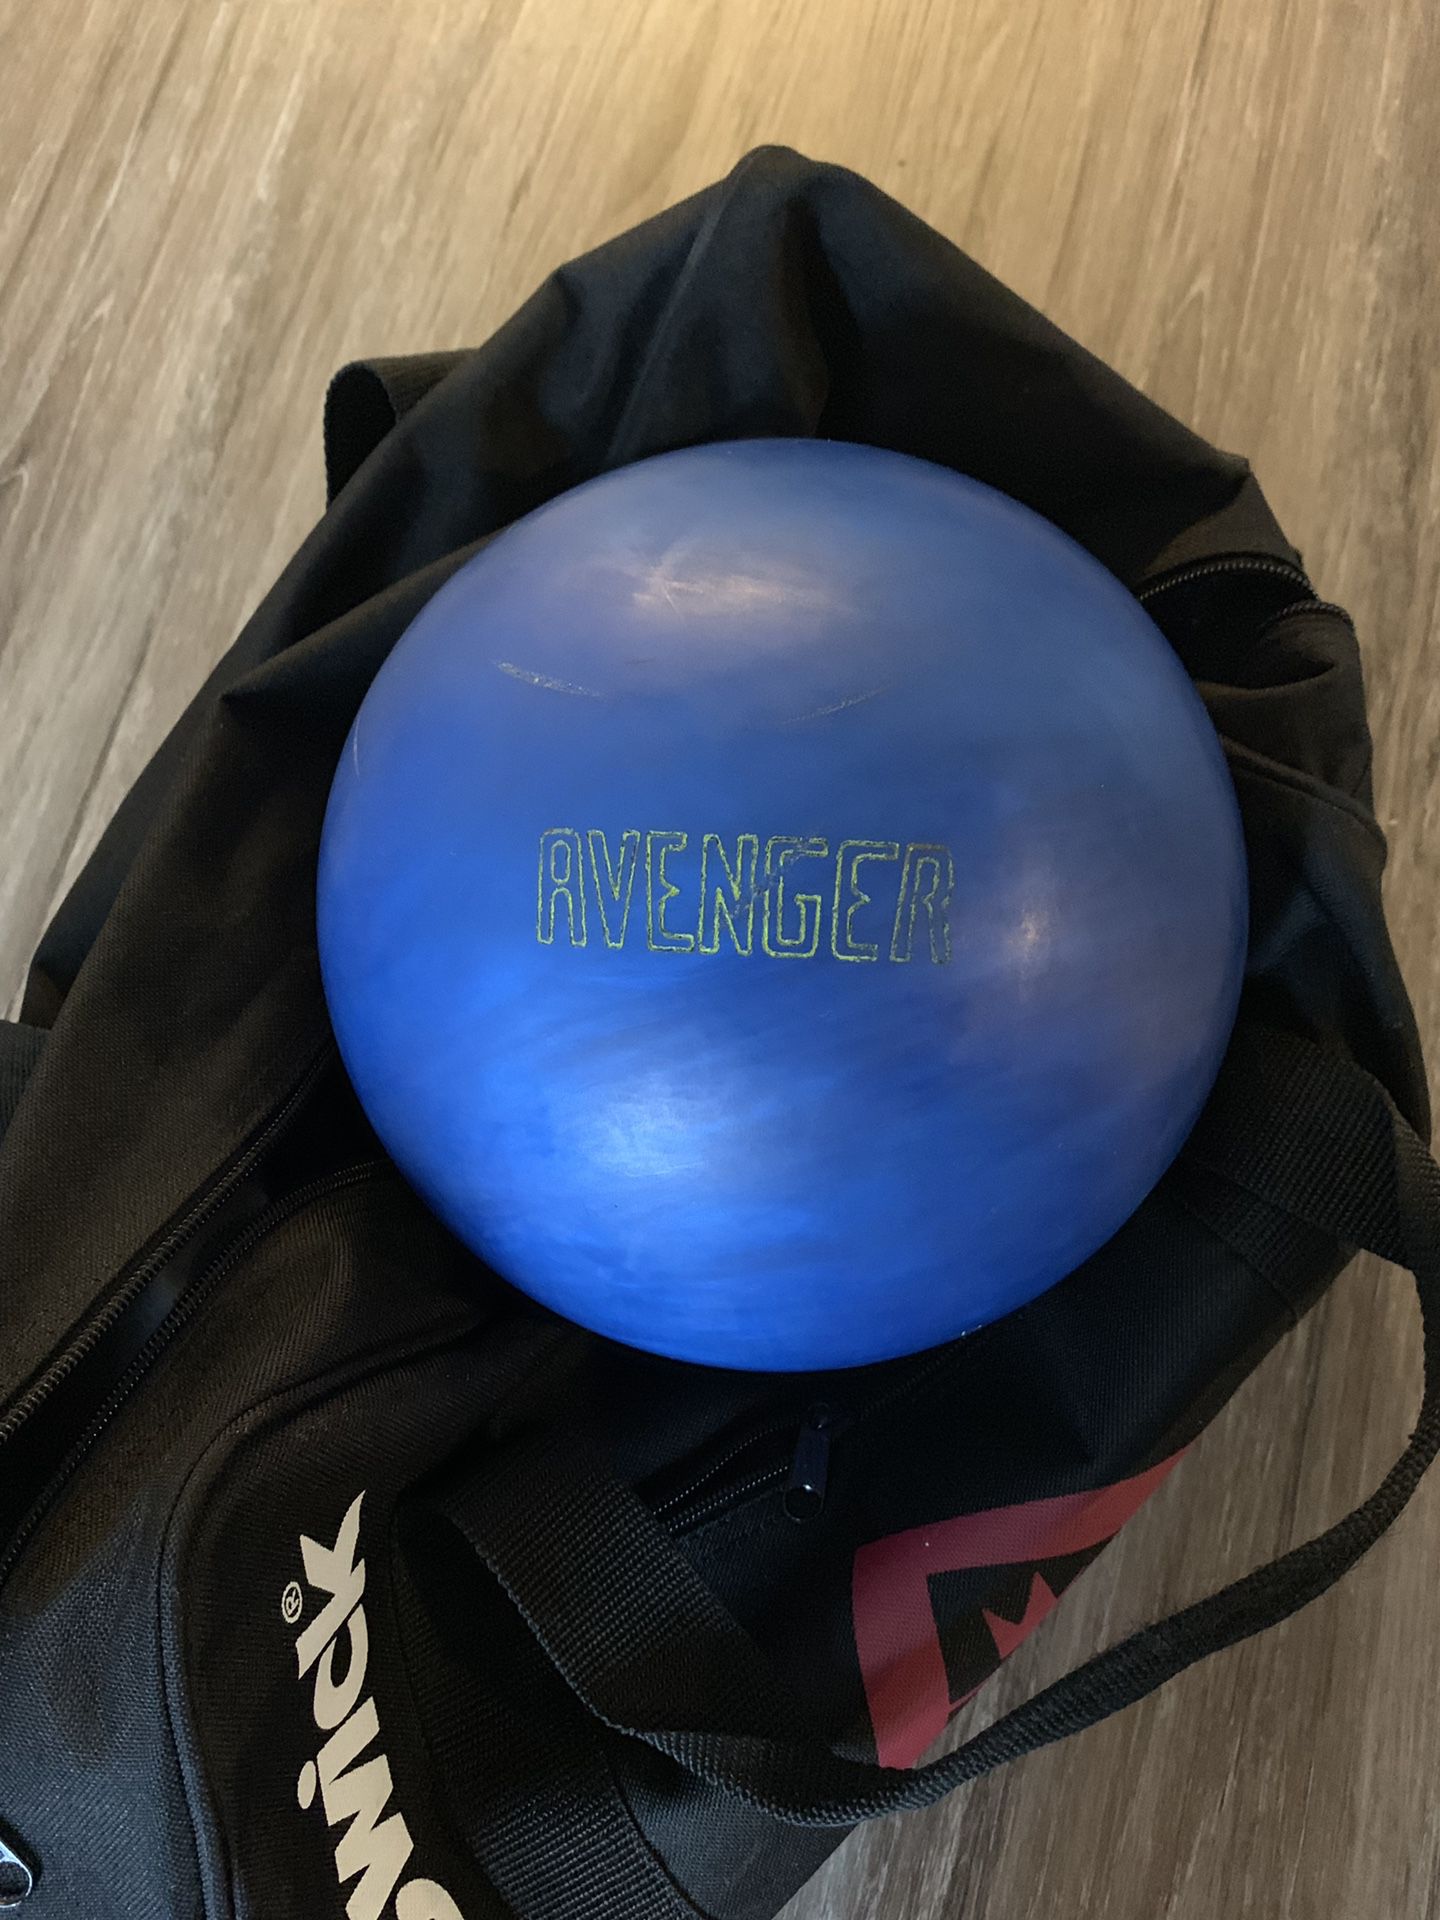 Bowling Ball - 13lbs